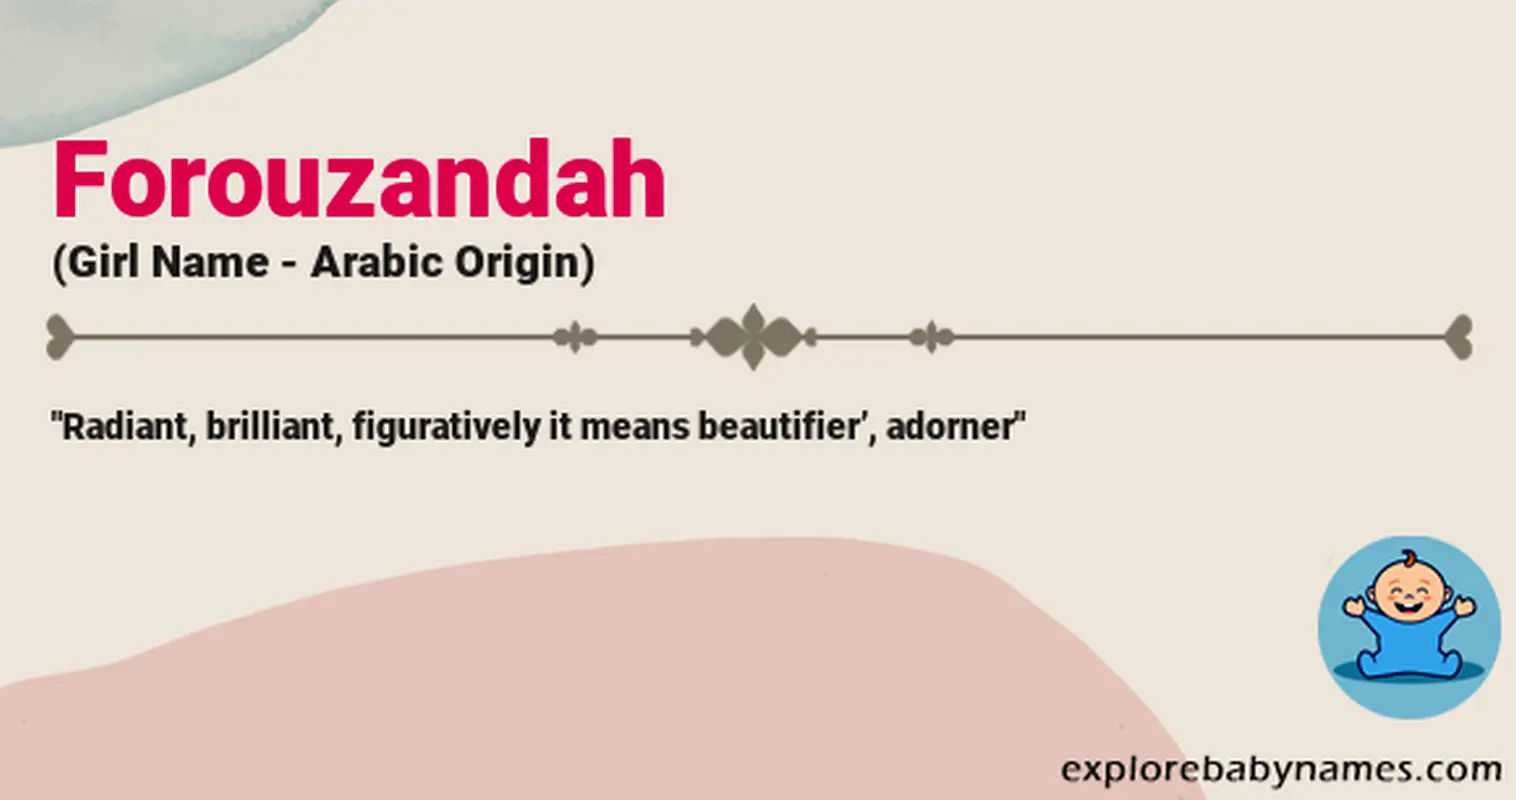 Meaning of Forouzandah